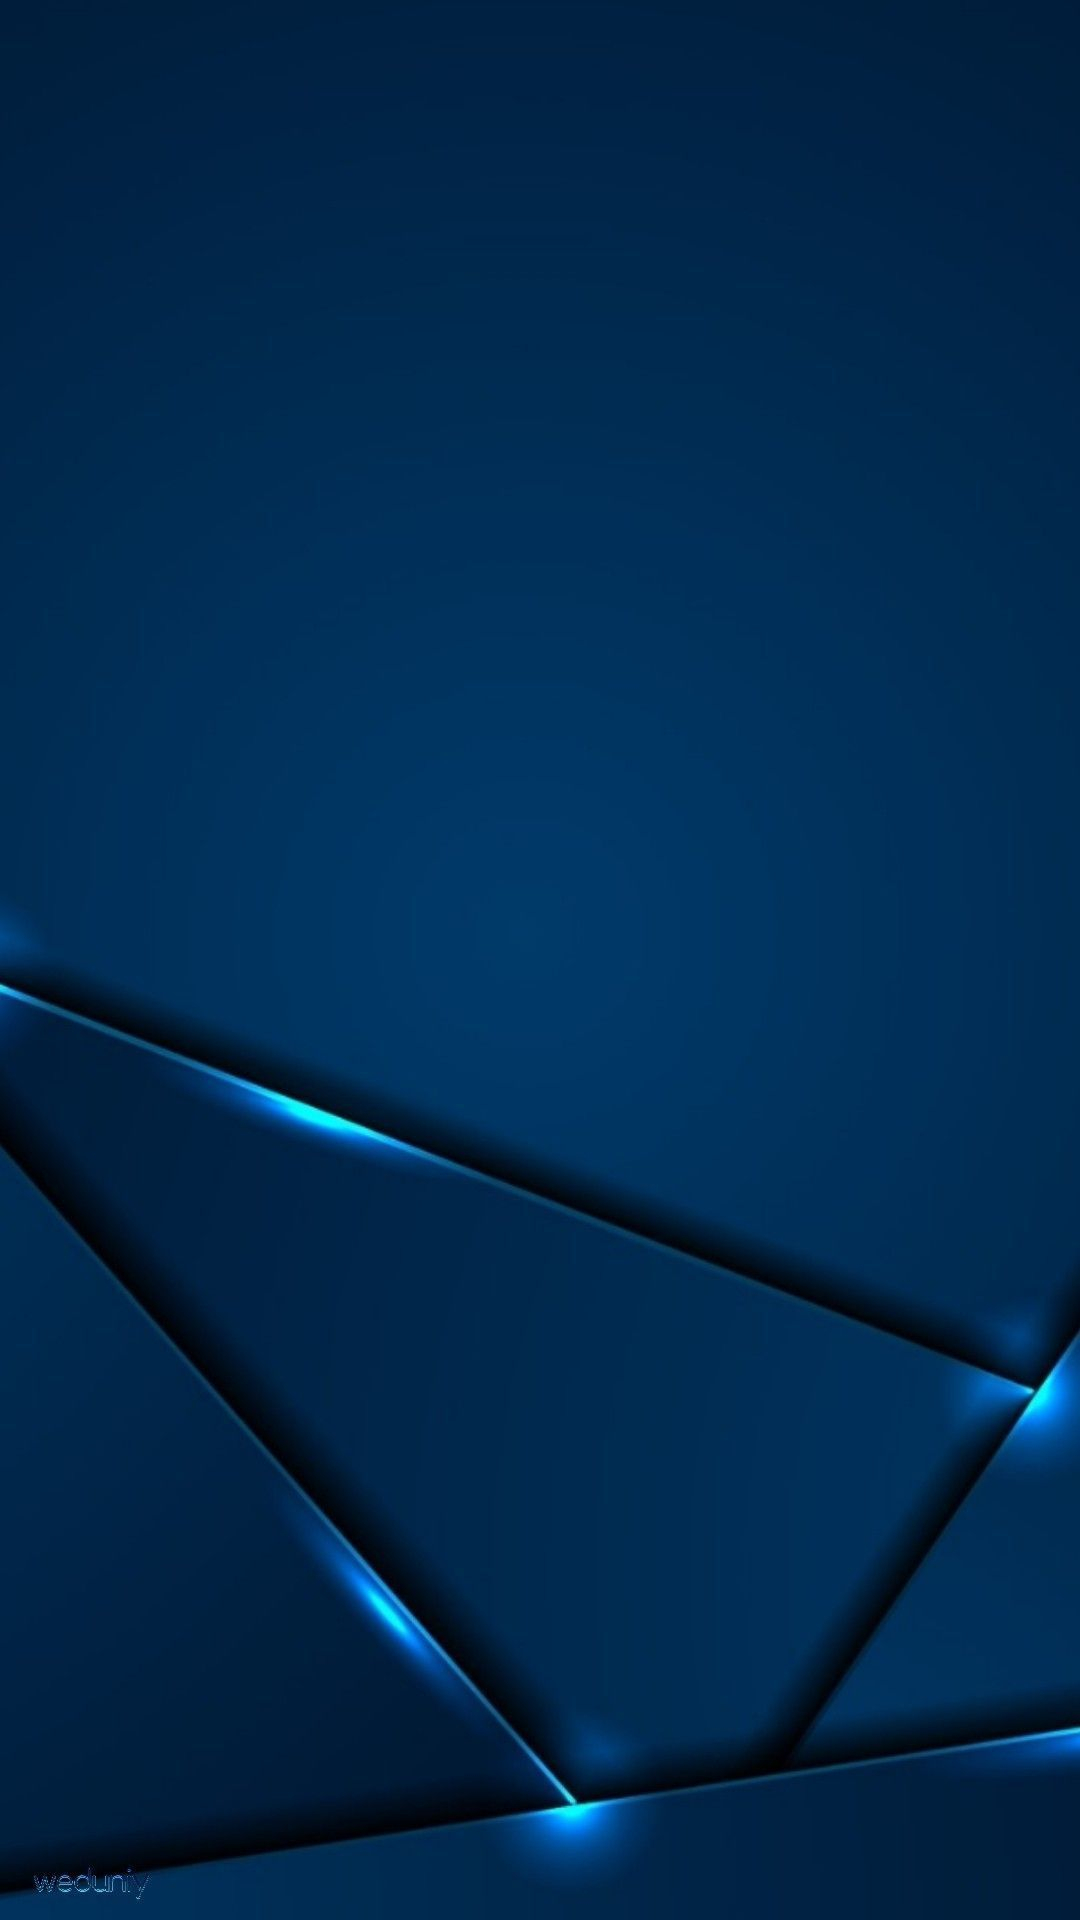 1080x1920 Blue Colour Wallpapers Desktop | Blue colour wallpaper, Color wallpaper iphone, Cellphone wallpaper